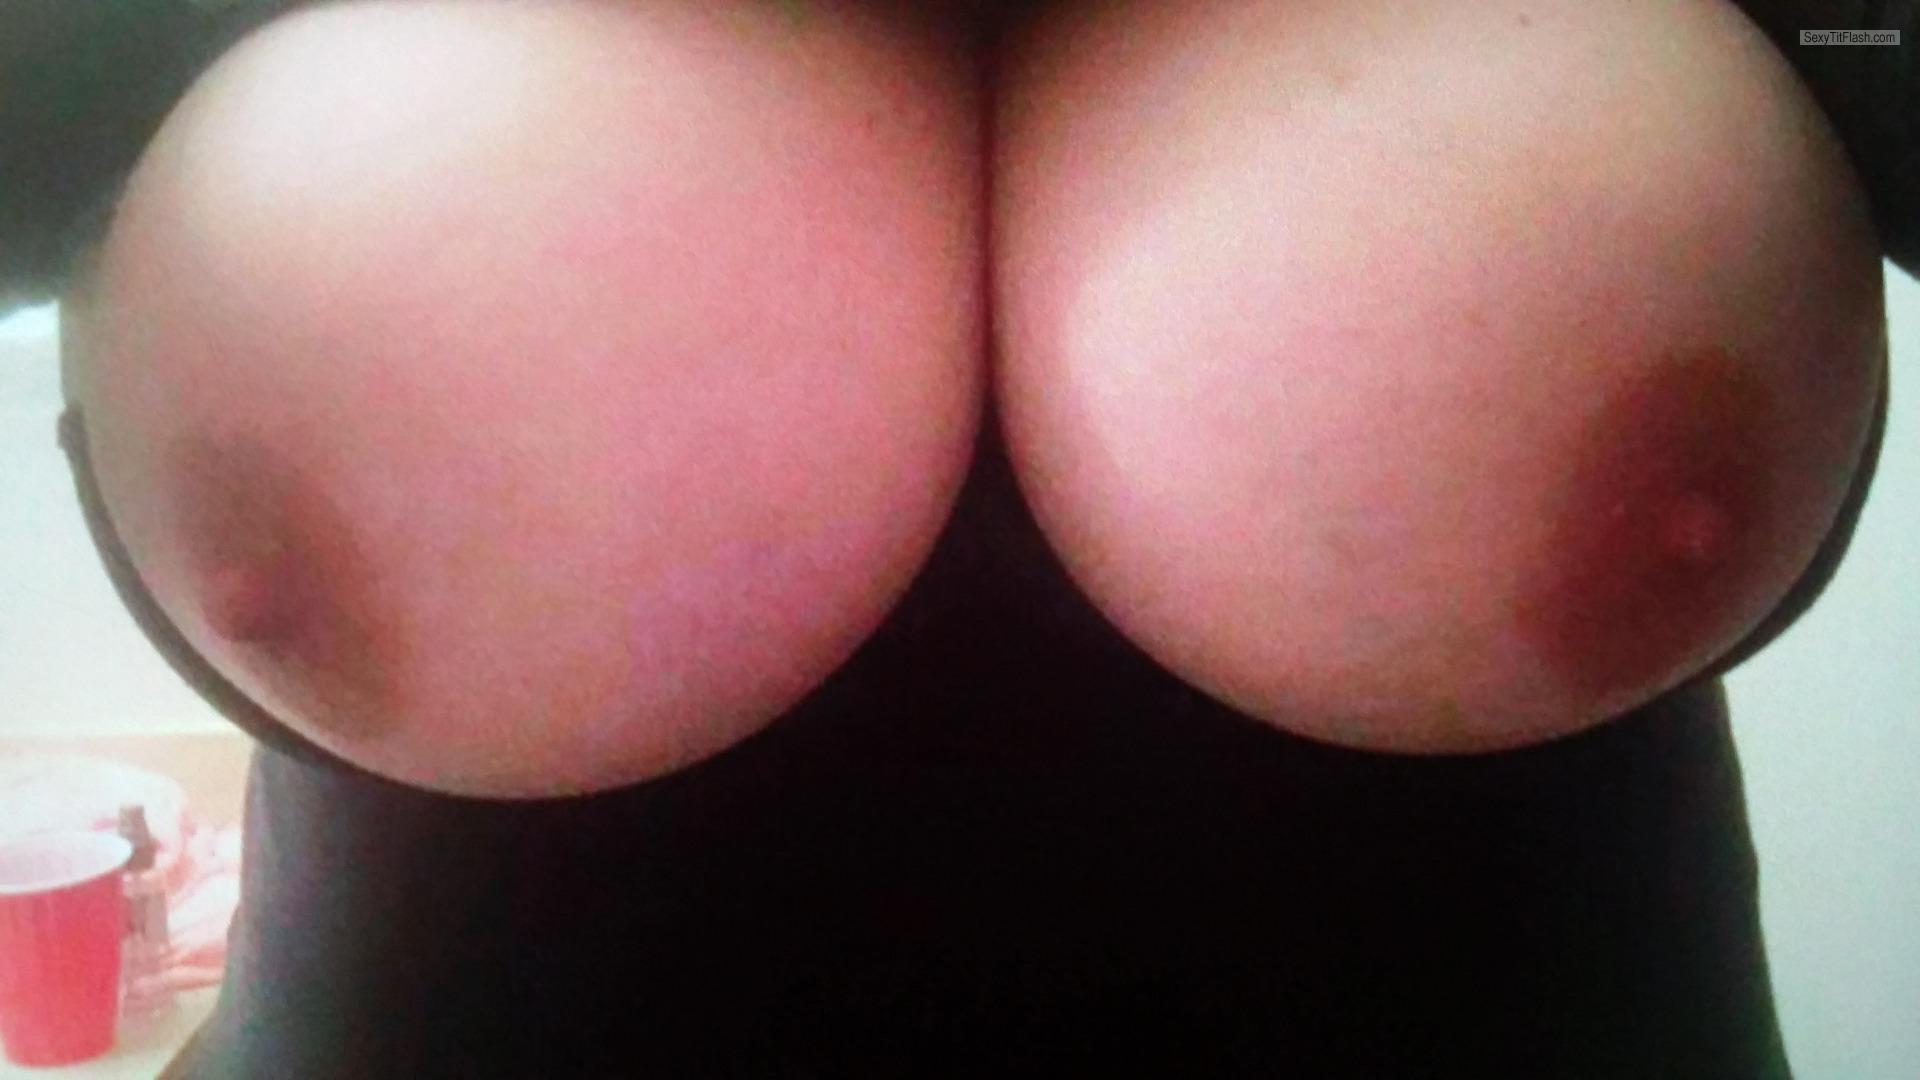 Tit Flash: My Very Big Tits (Selfie) - Boooom from United States